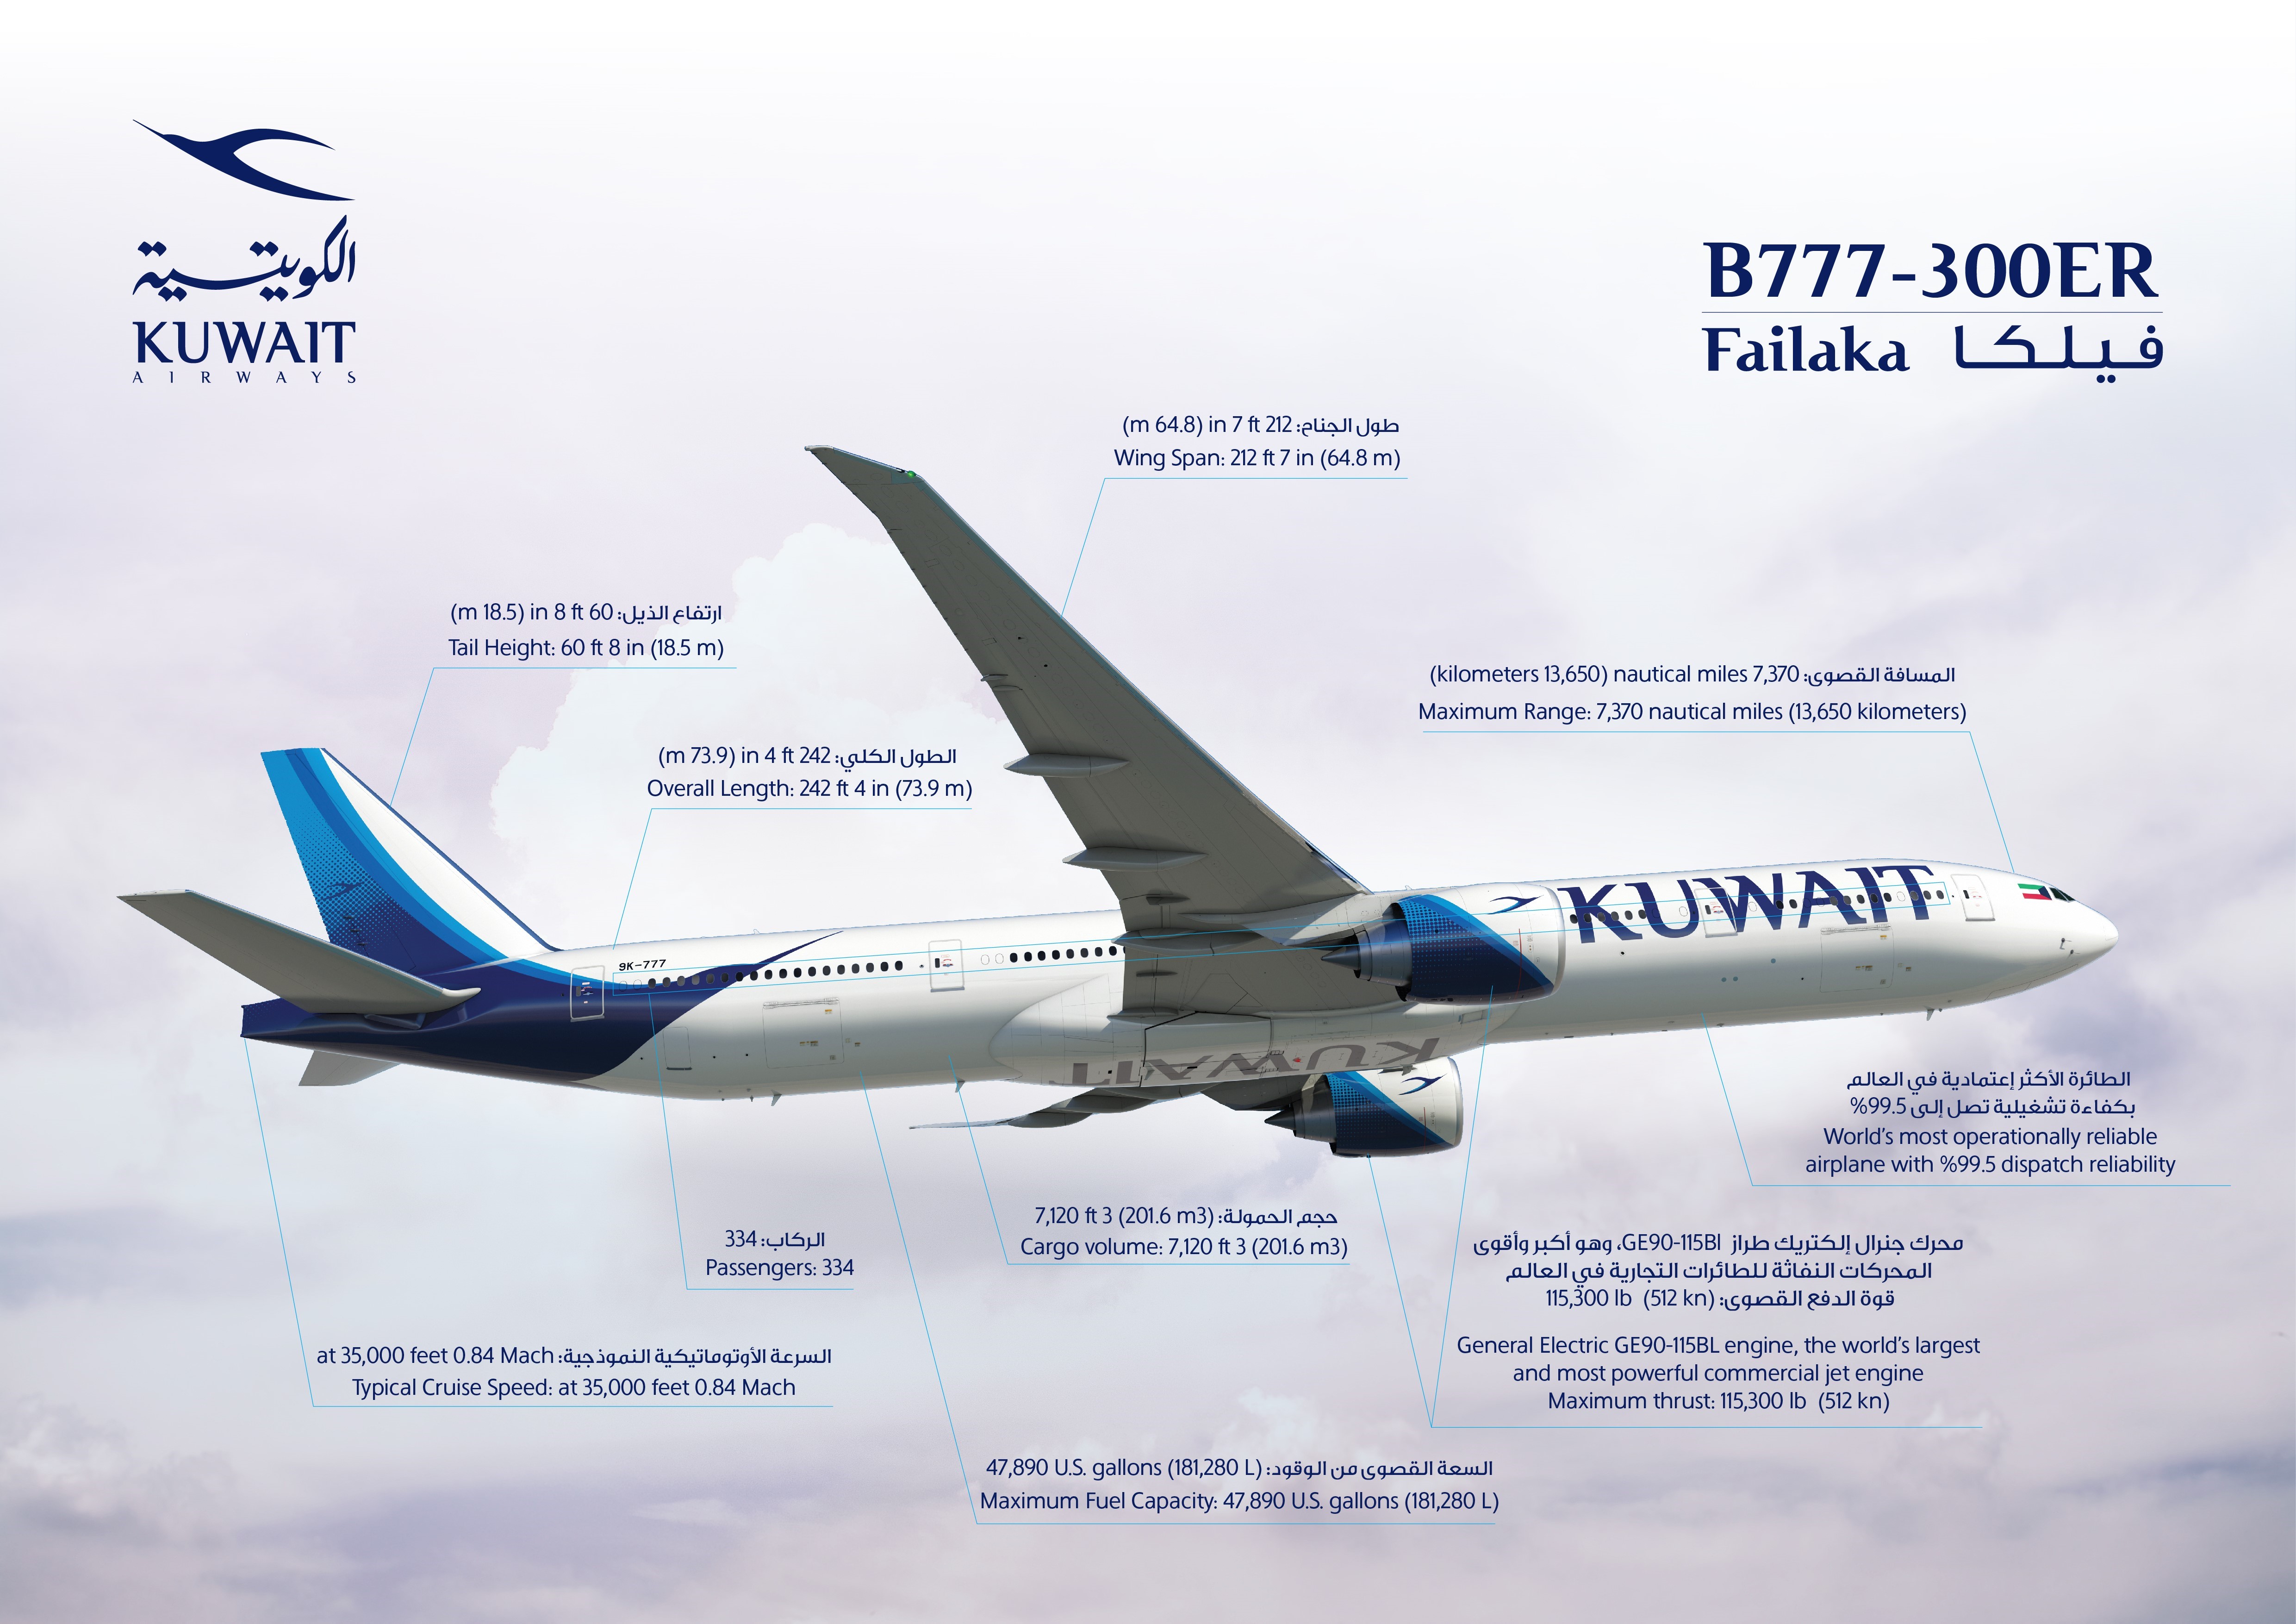 Boeing 777-300ER received by Kuwait Airways